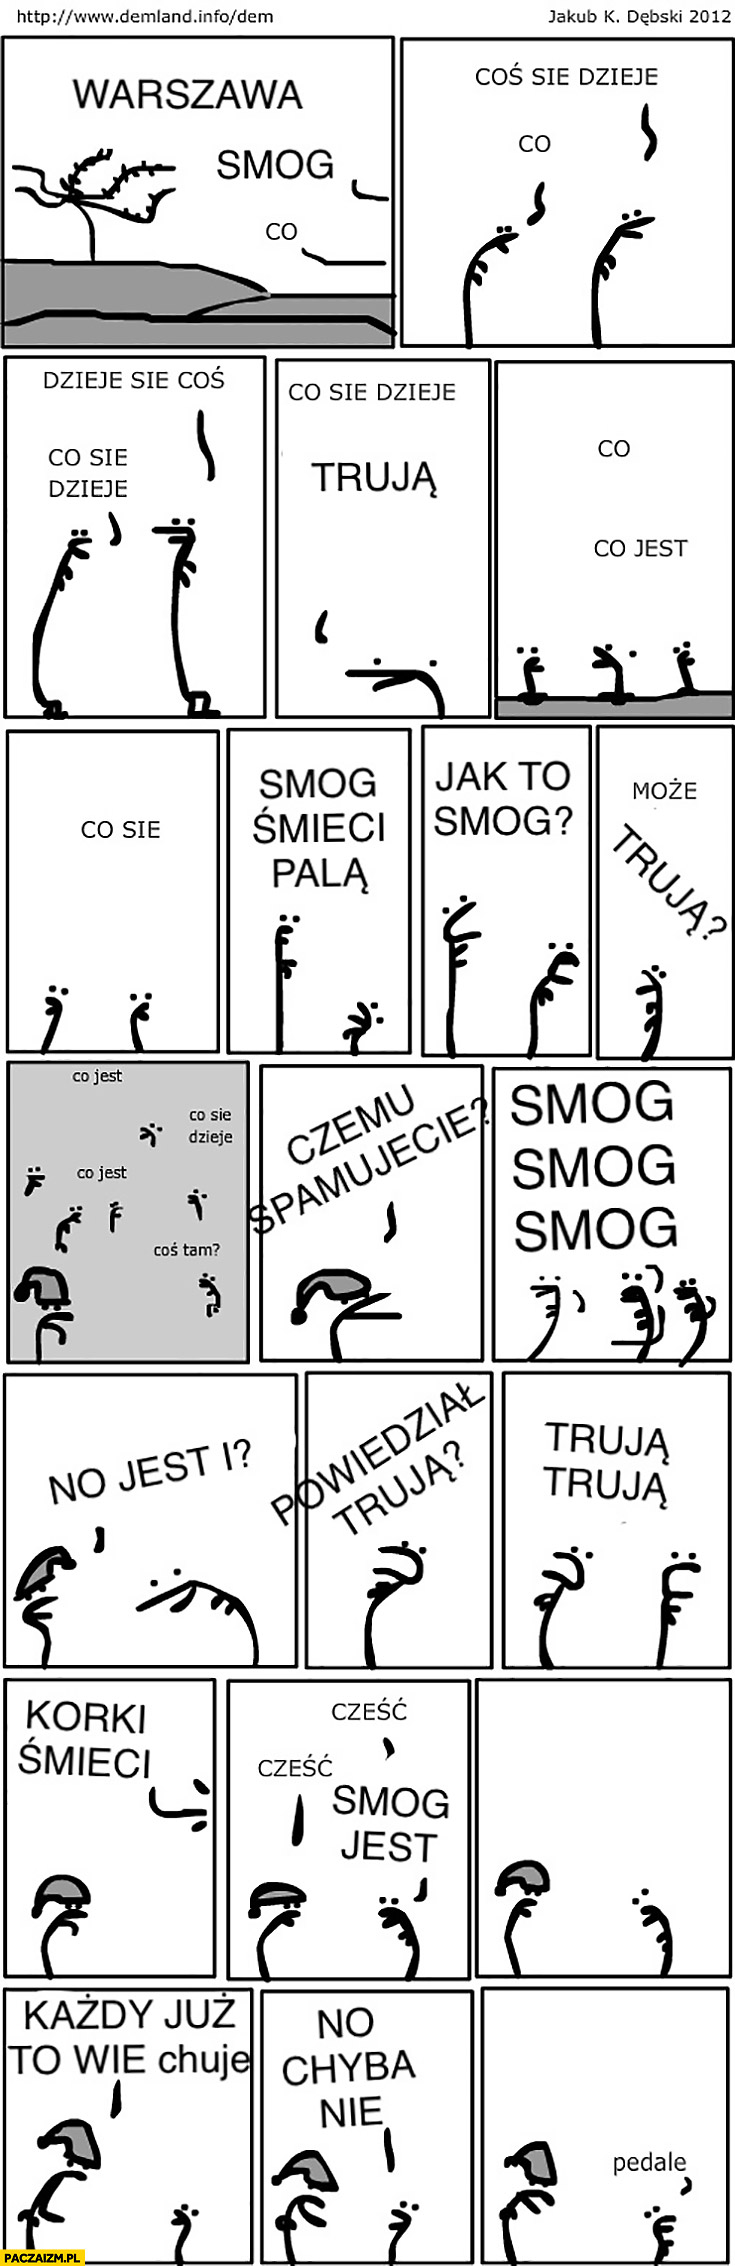 Smog komiks demland